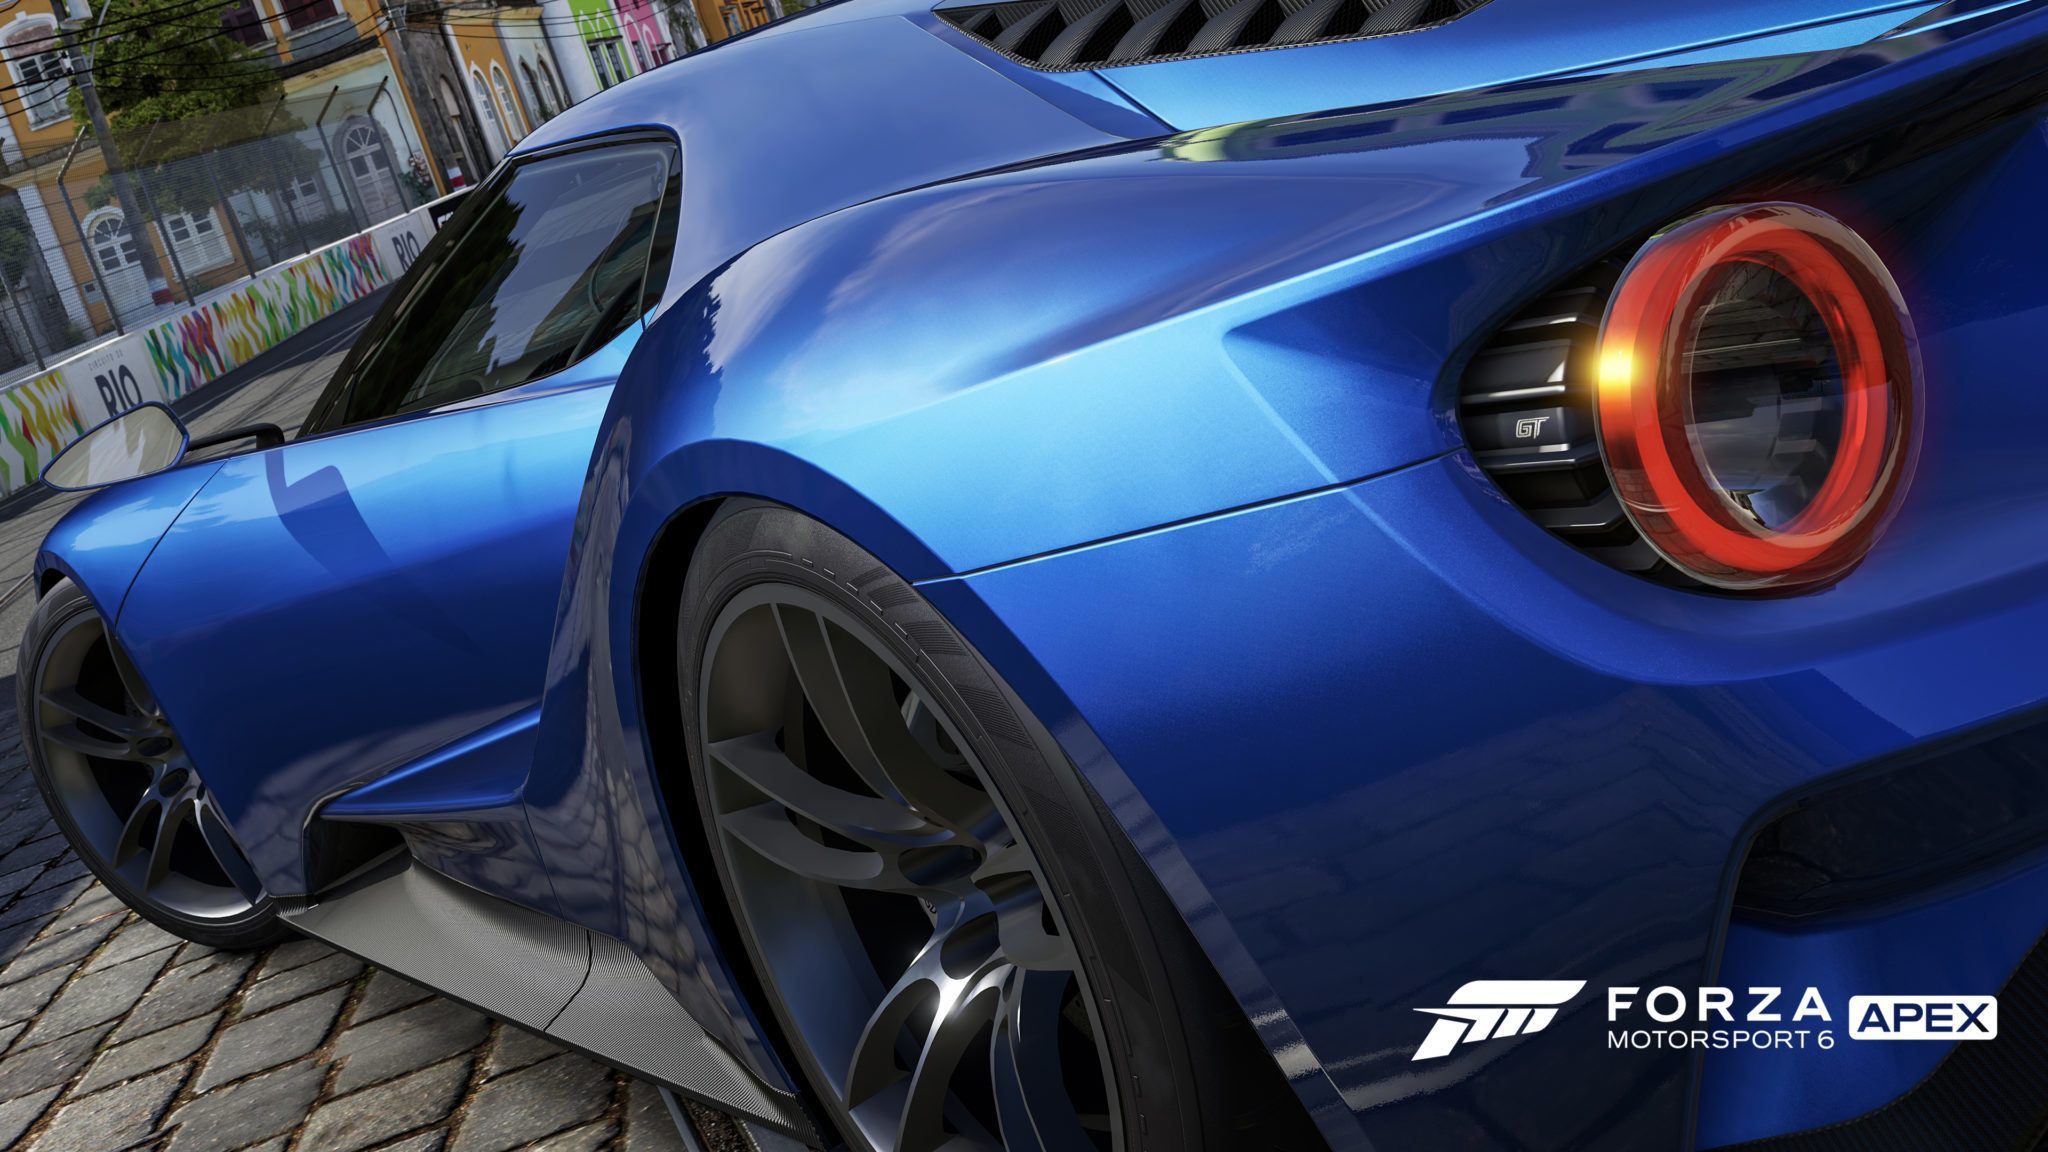 Conheça os requisitos para Forza Motorsport 6 Apex